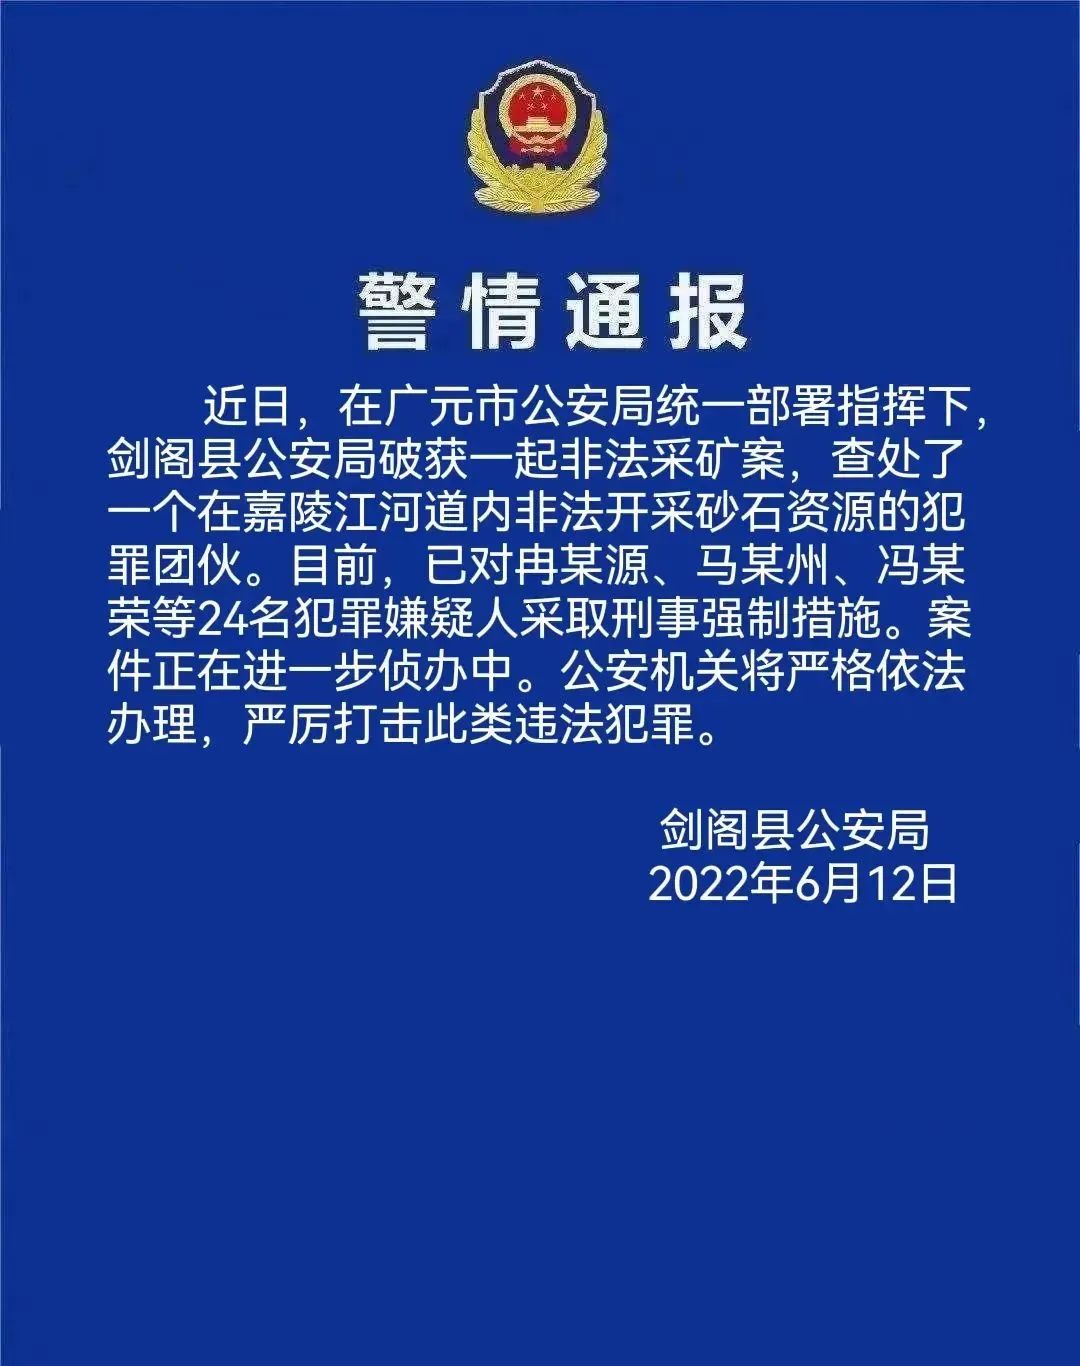 图源剑阁县公安局官方公众号。